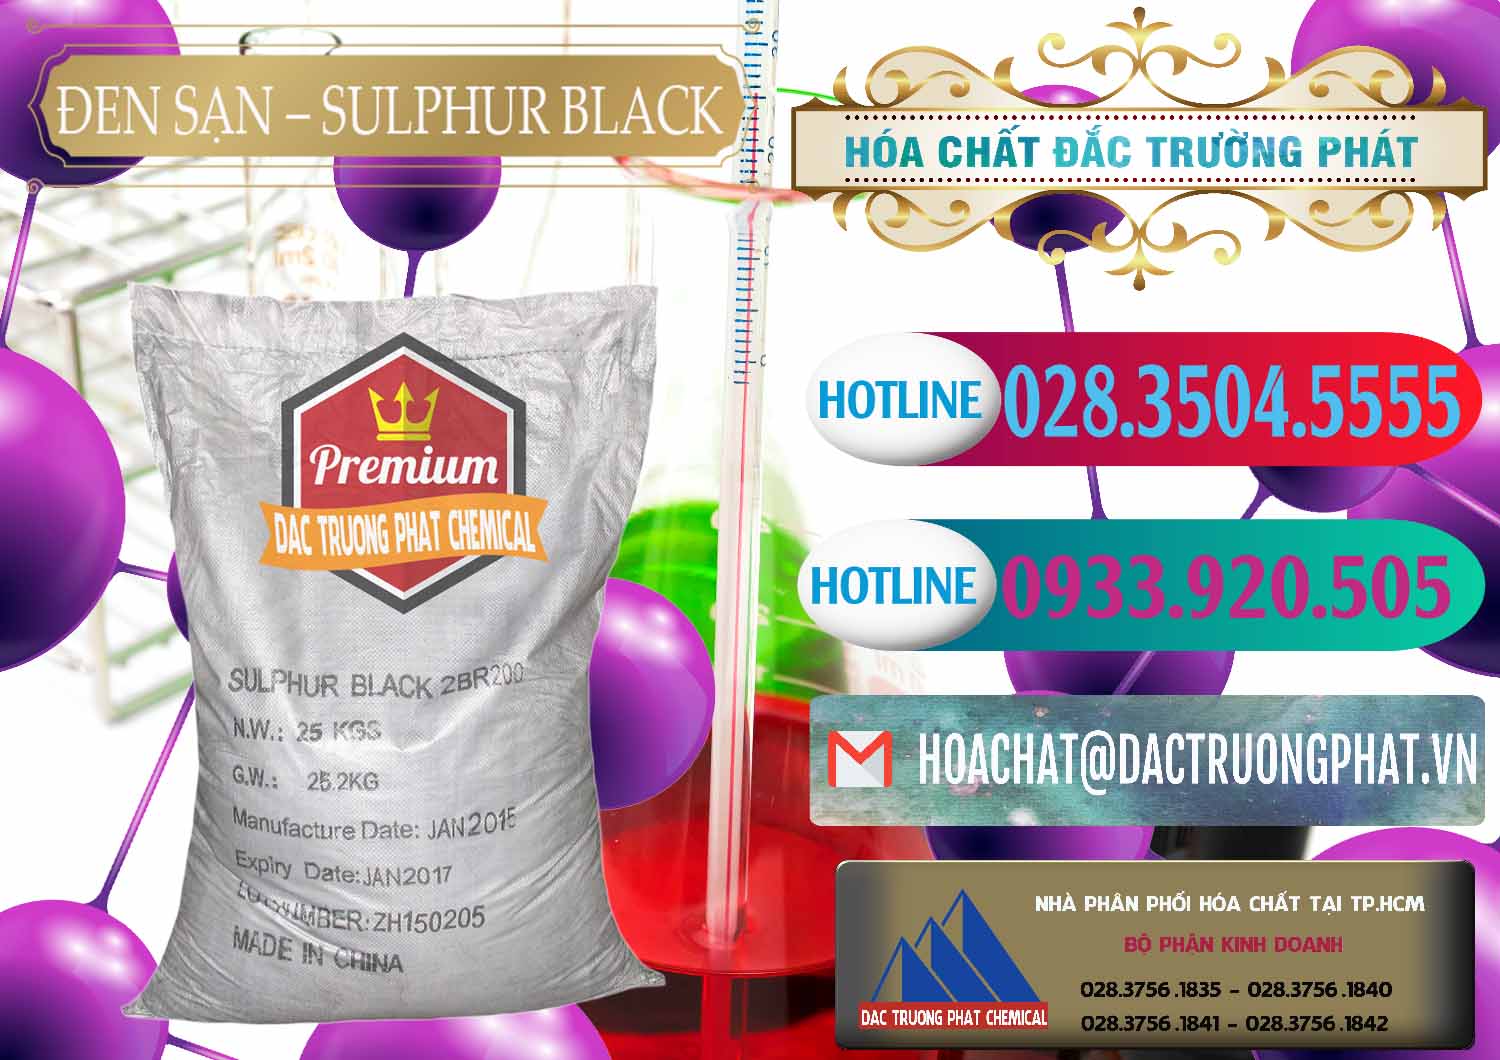 Chuyên cung cấp _ bán Đen Sạn – Sulphur Black Trung Quốc China - 0062 - Cty cung cấp và phân phối hóa chất tại TP.HCM - truongphat.vn